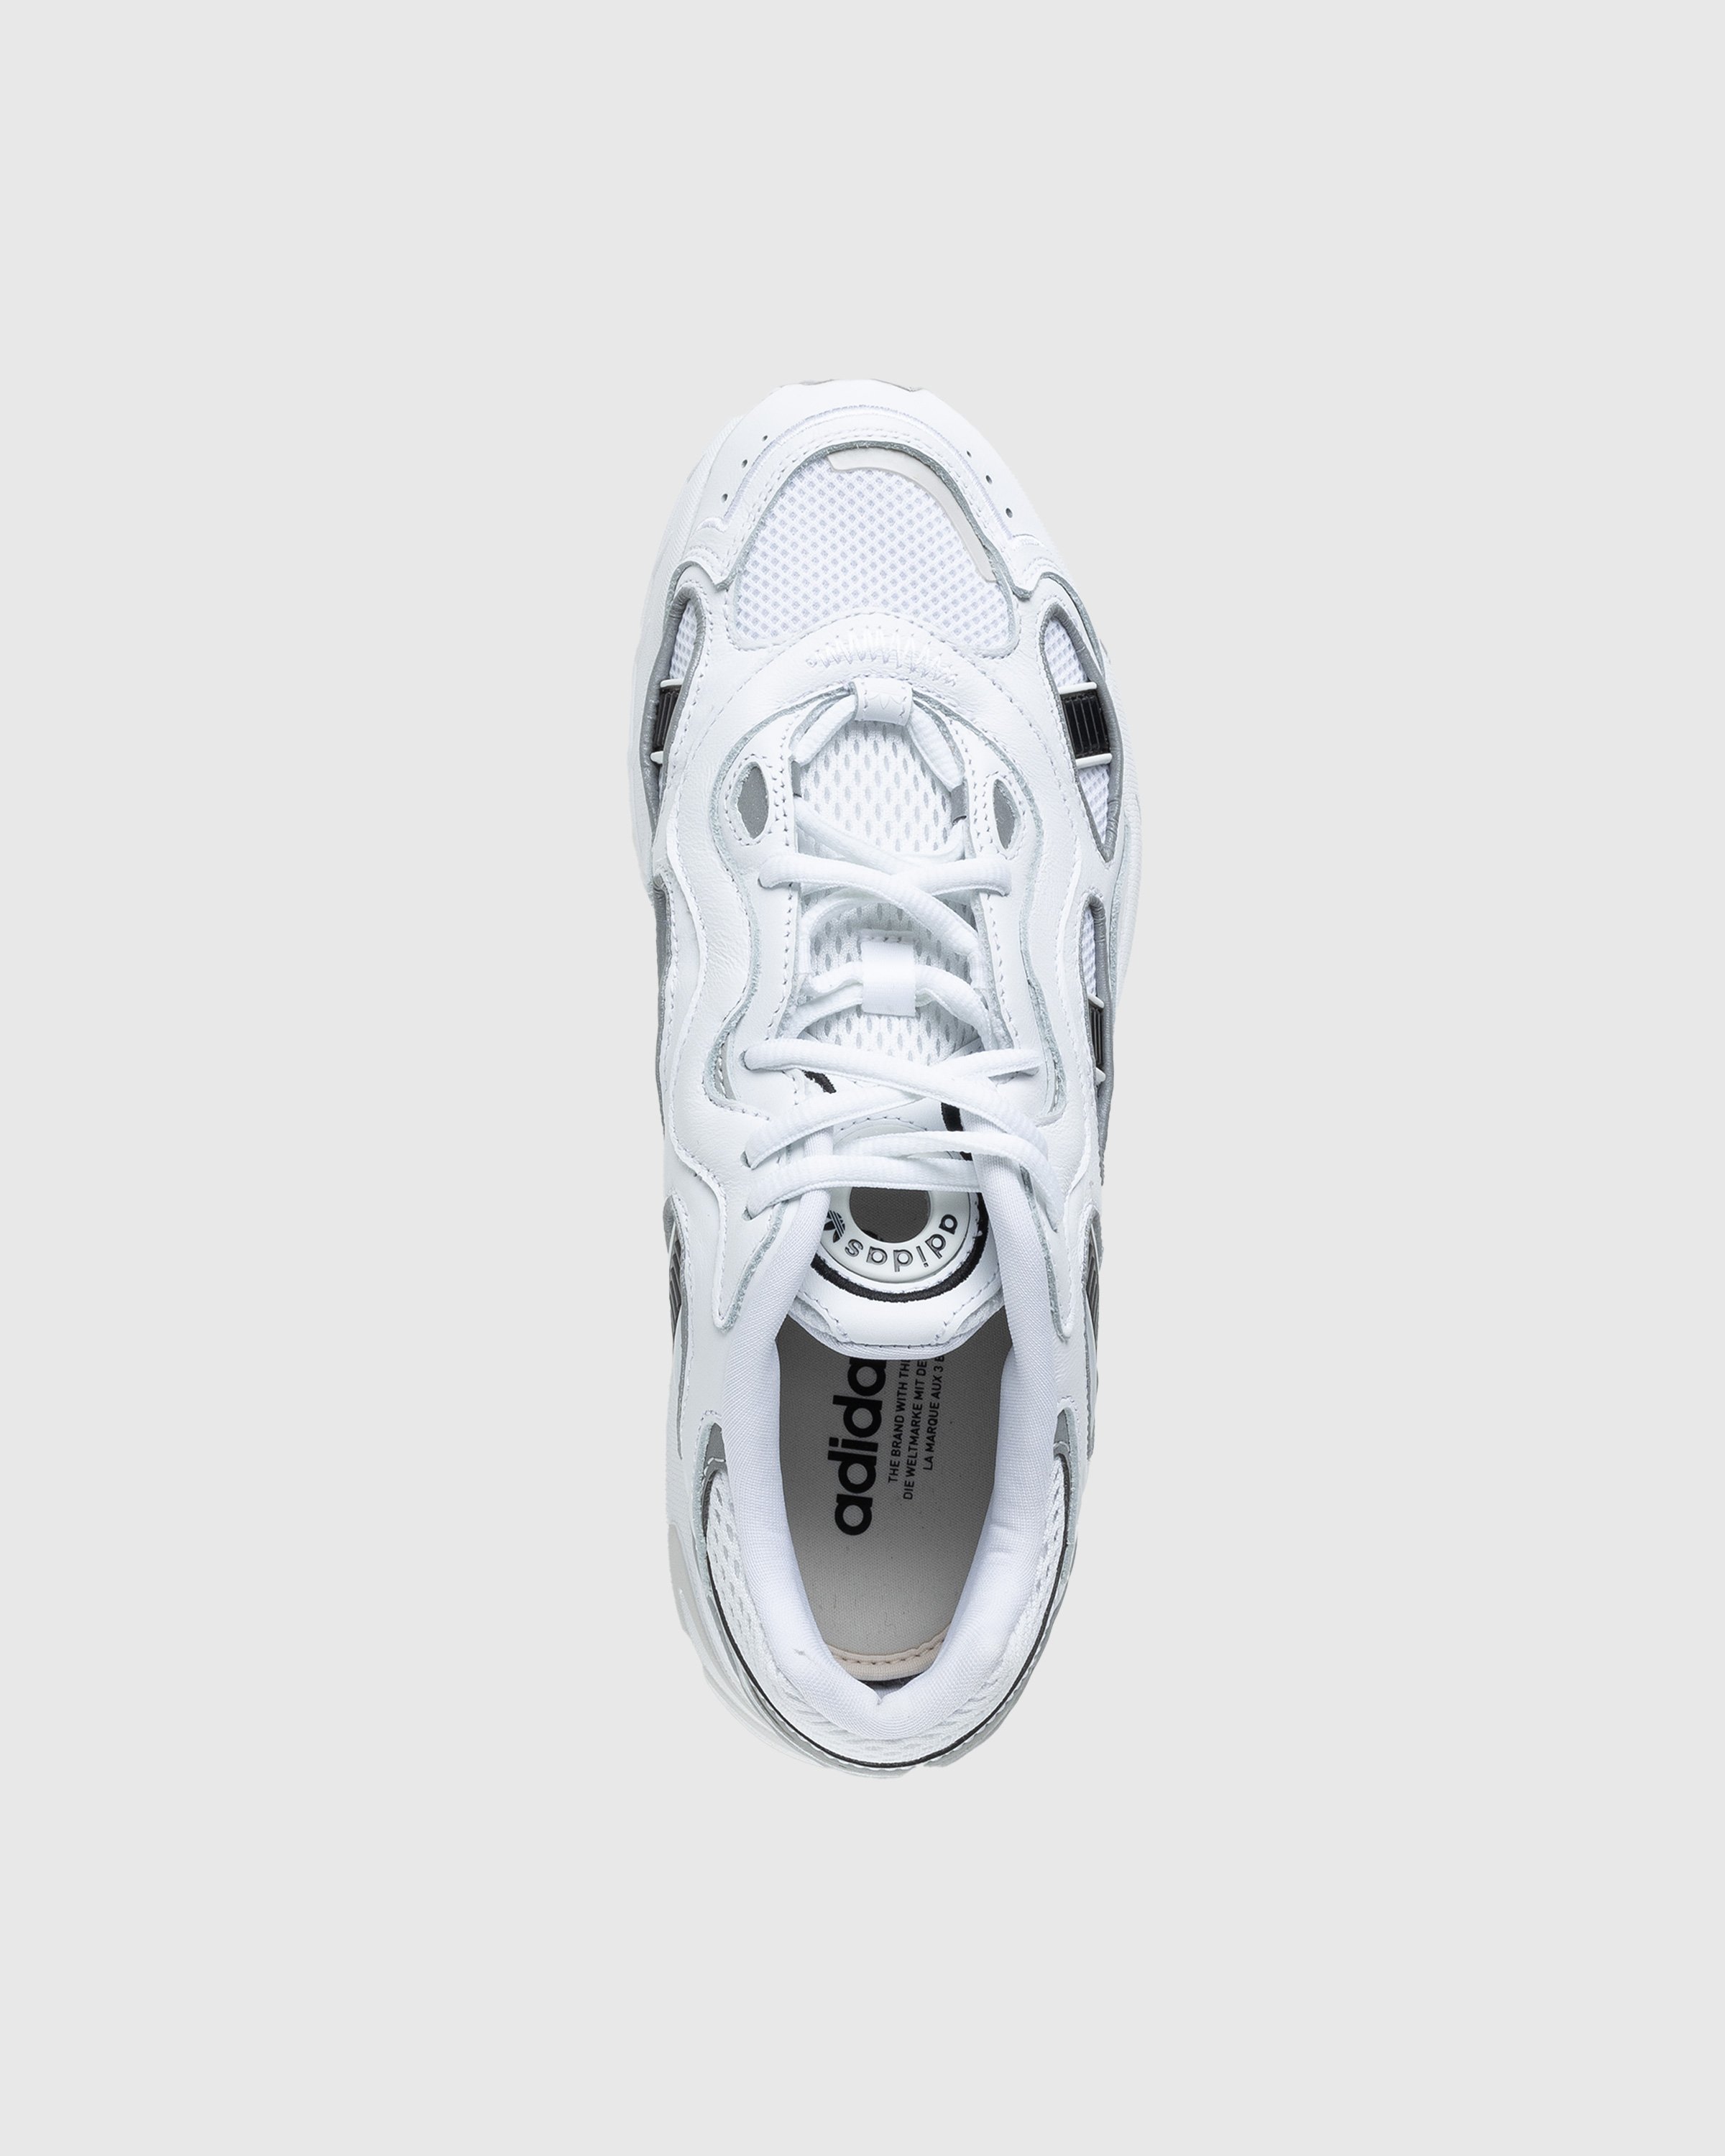 Adidas - Astir Sn White - Footwear - White - Image 5